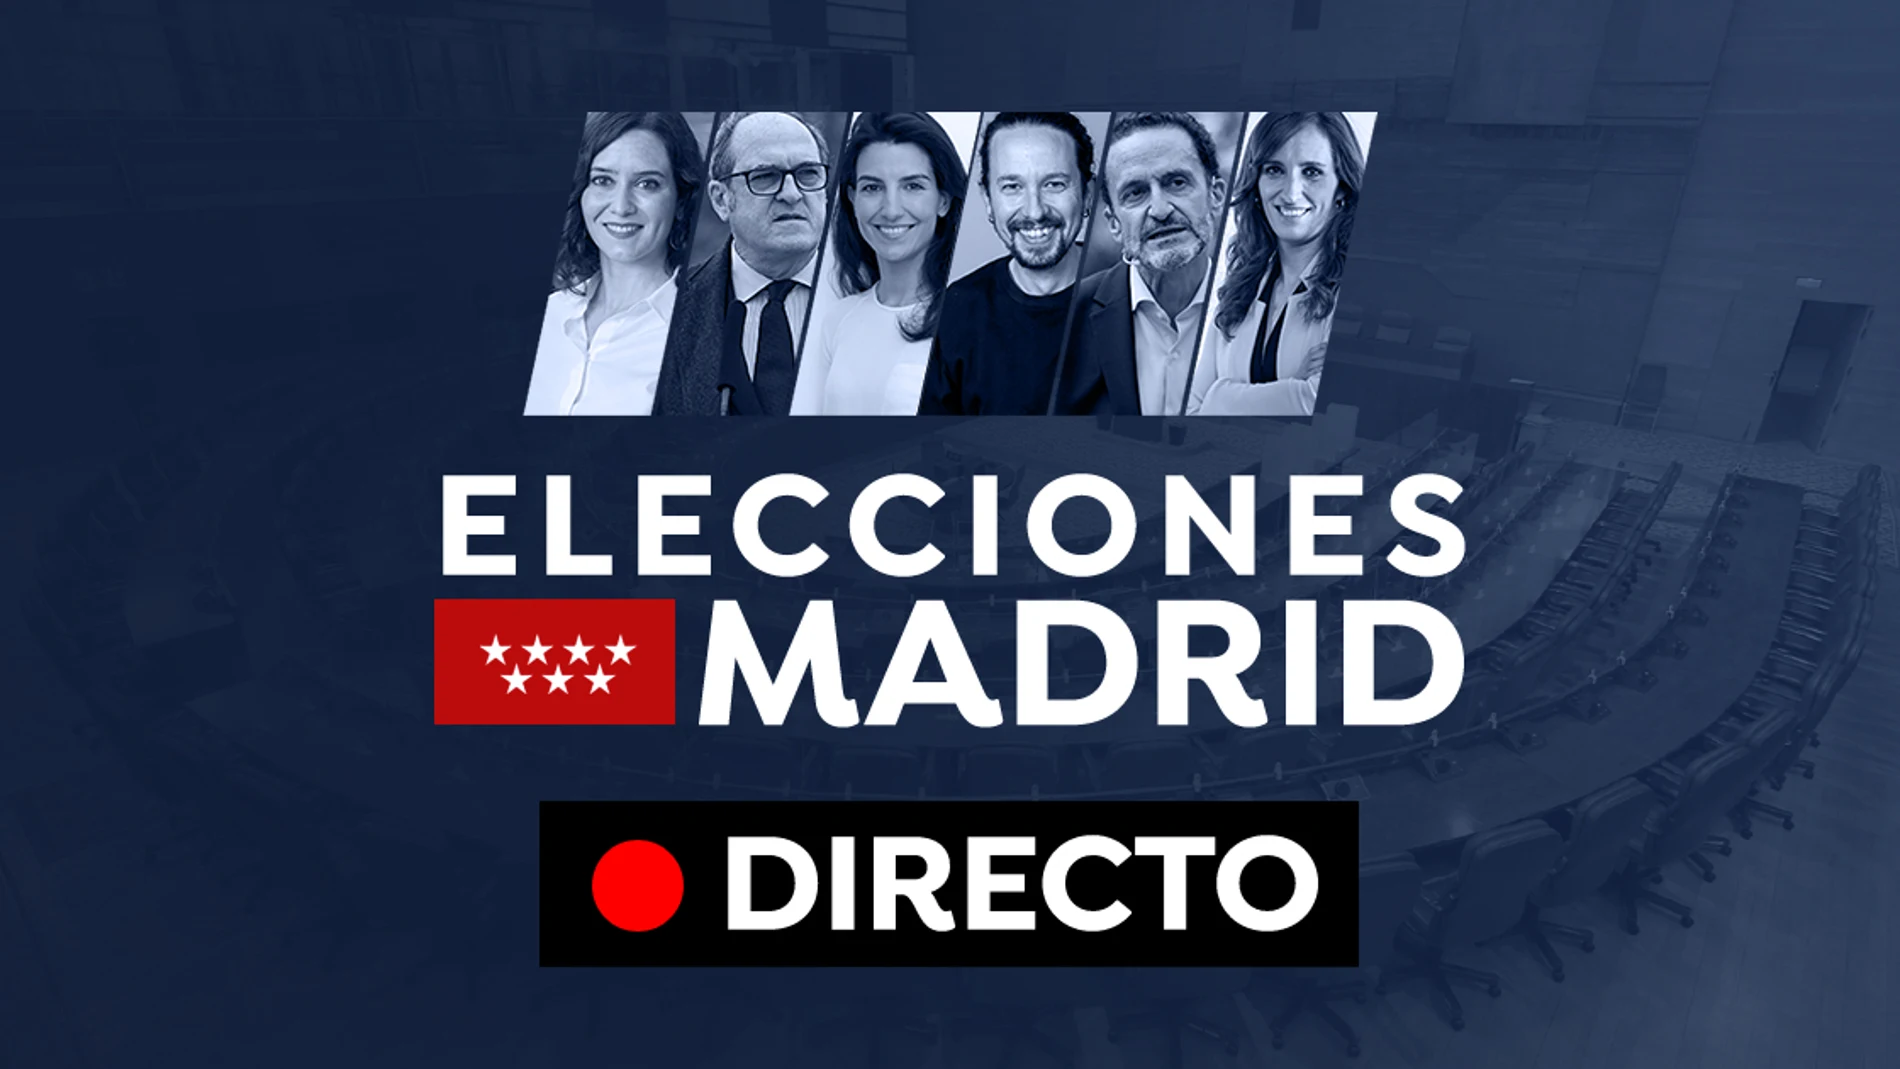 Elecciones Madrid 2021, en directo: Encuestas, partidos políticos y candidatos del 4M hoy